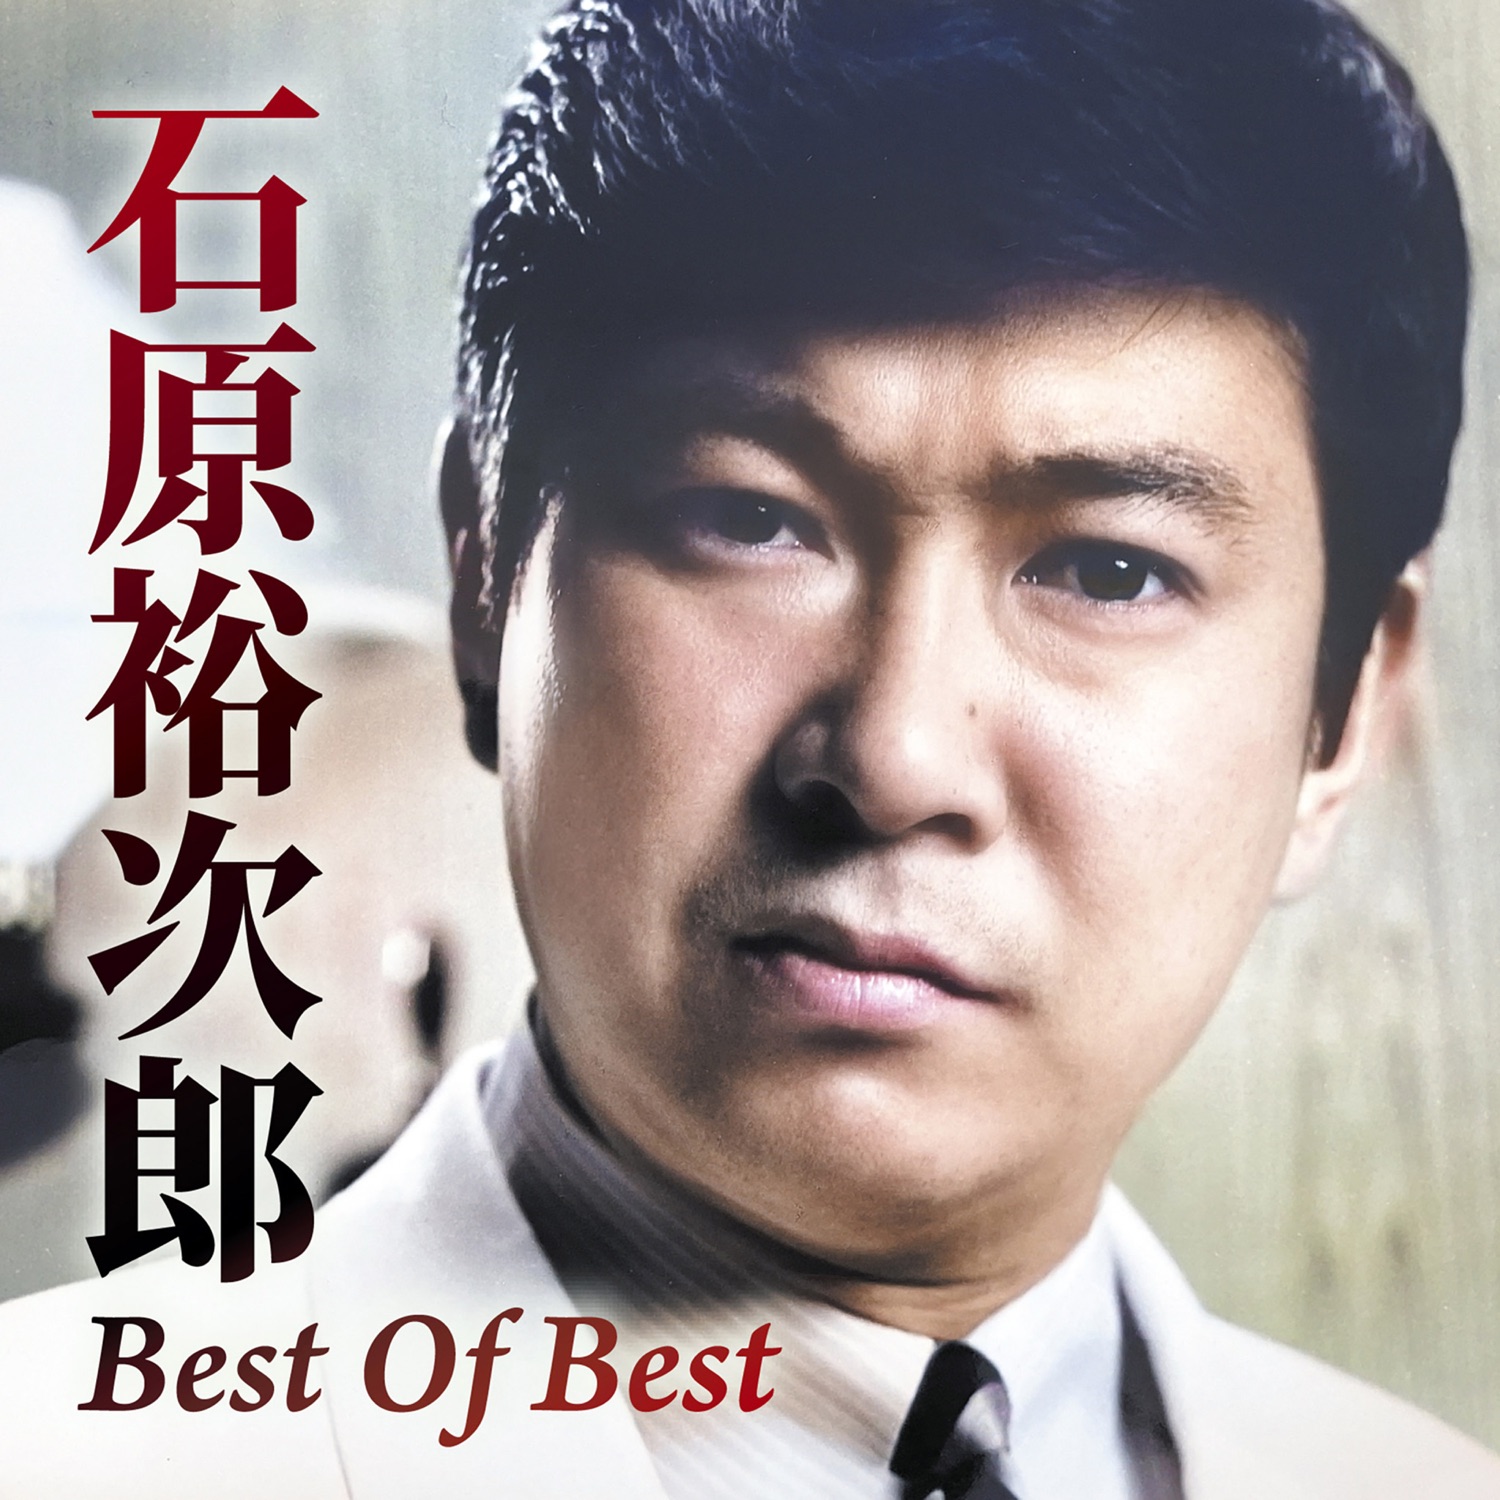 石原裕次郎 / Best Of Best